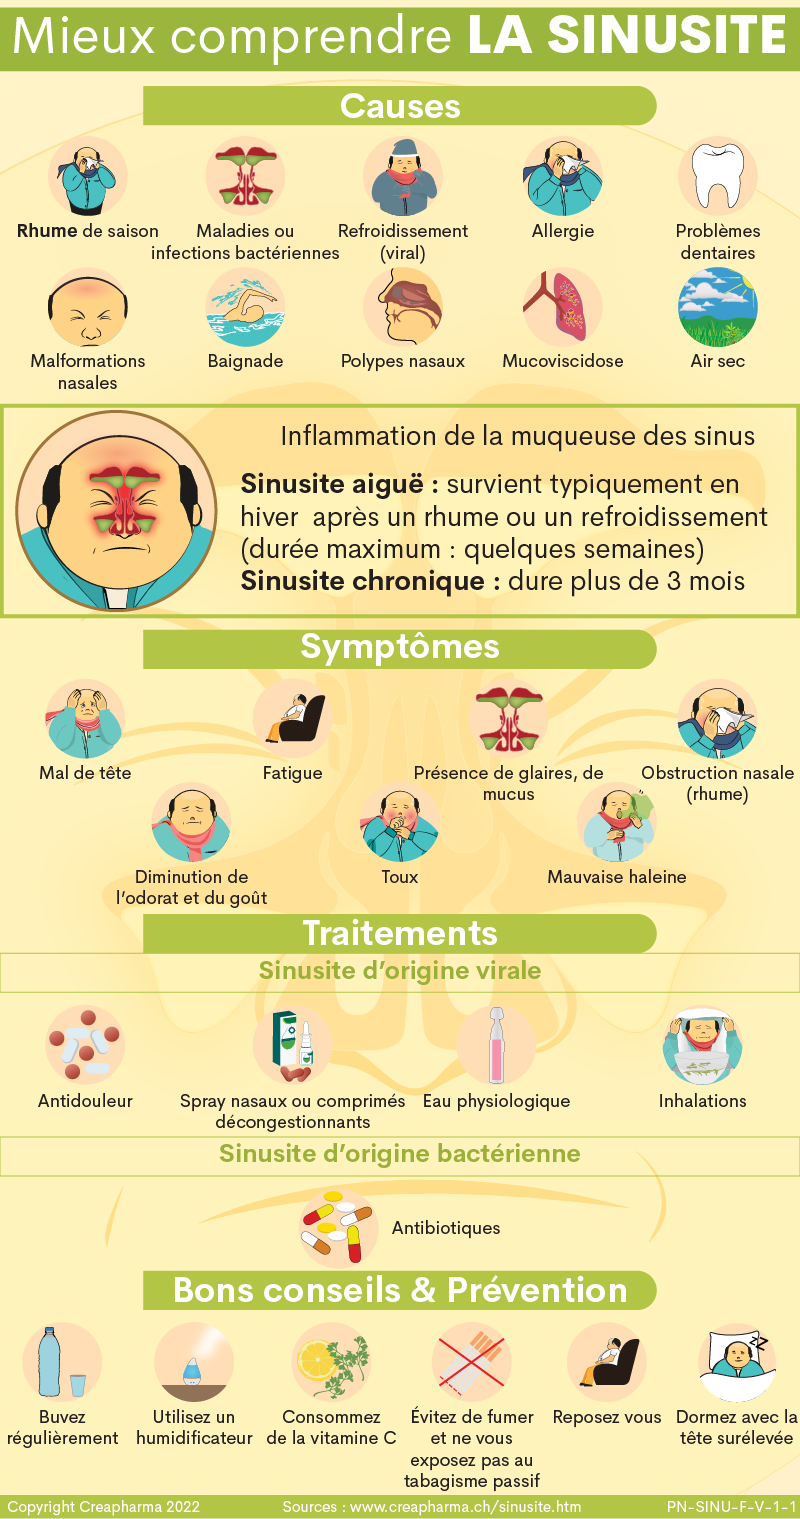 Sinusite : causes, symptômes & traitements